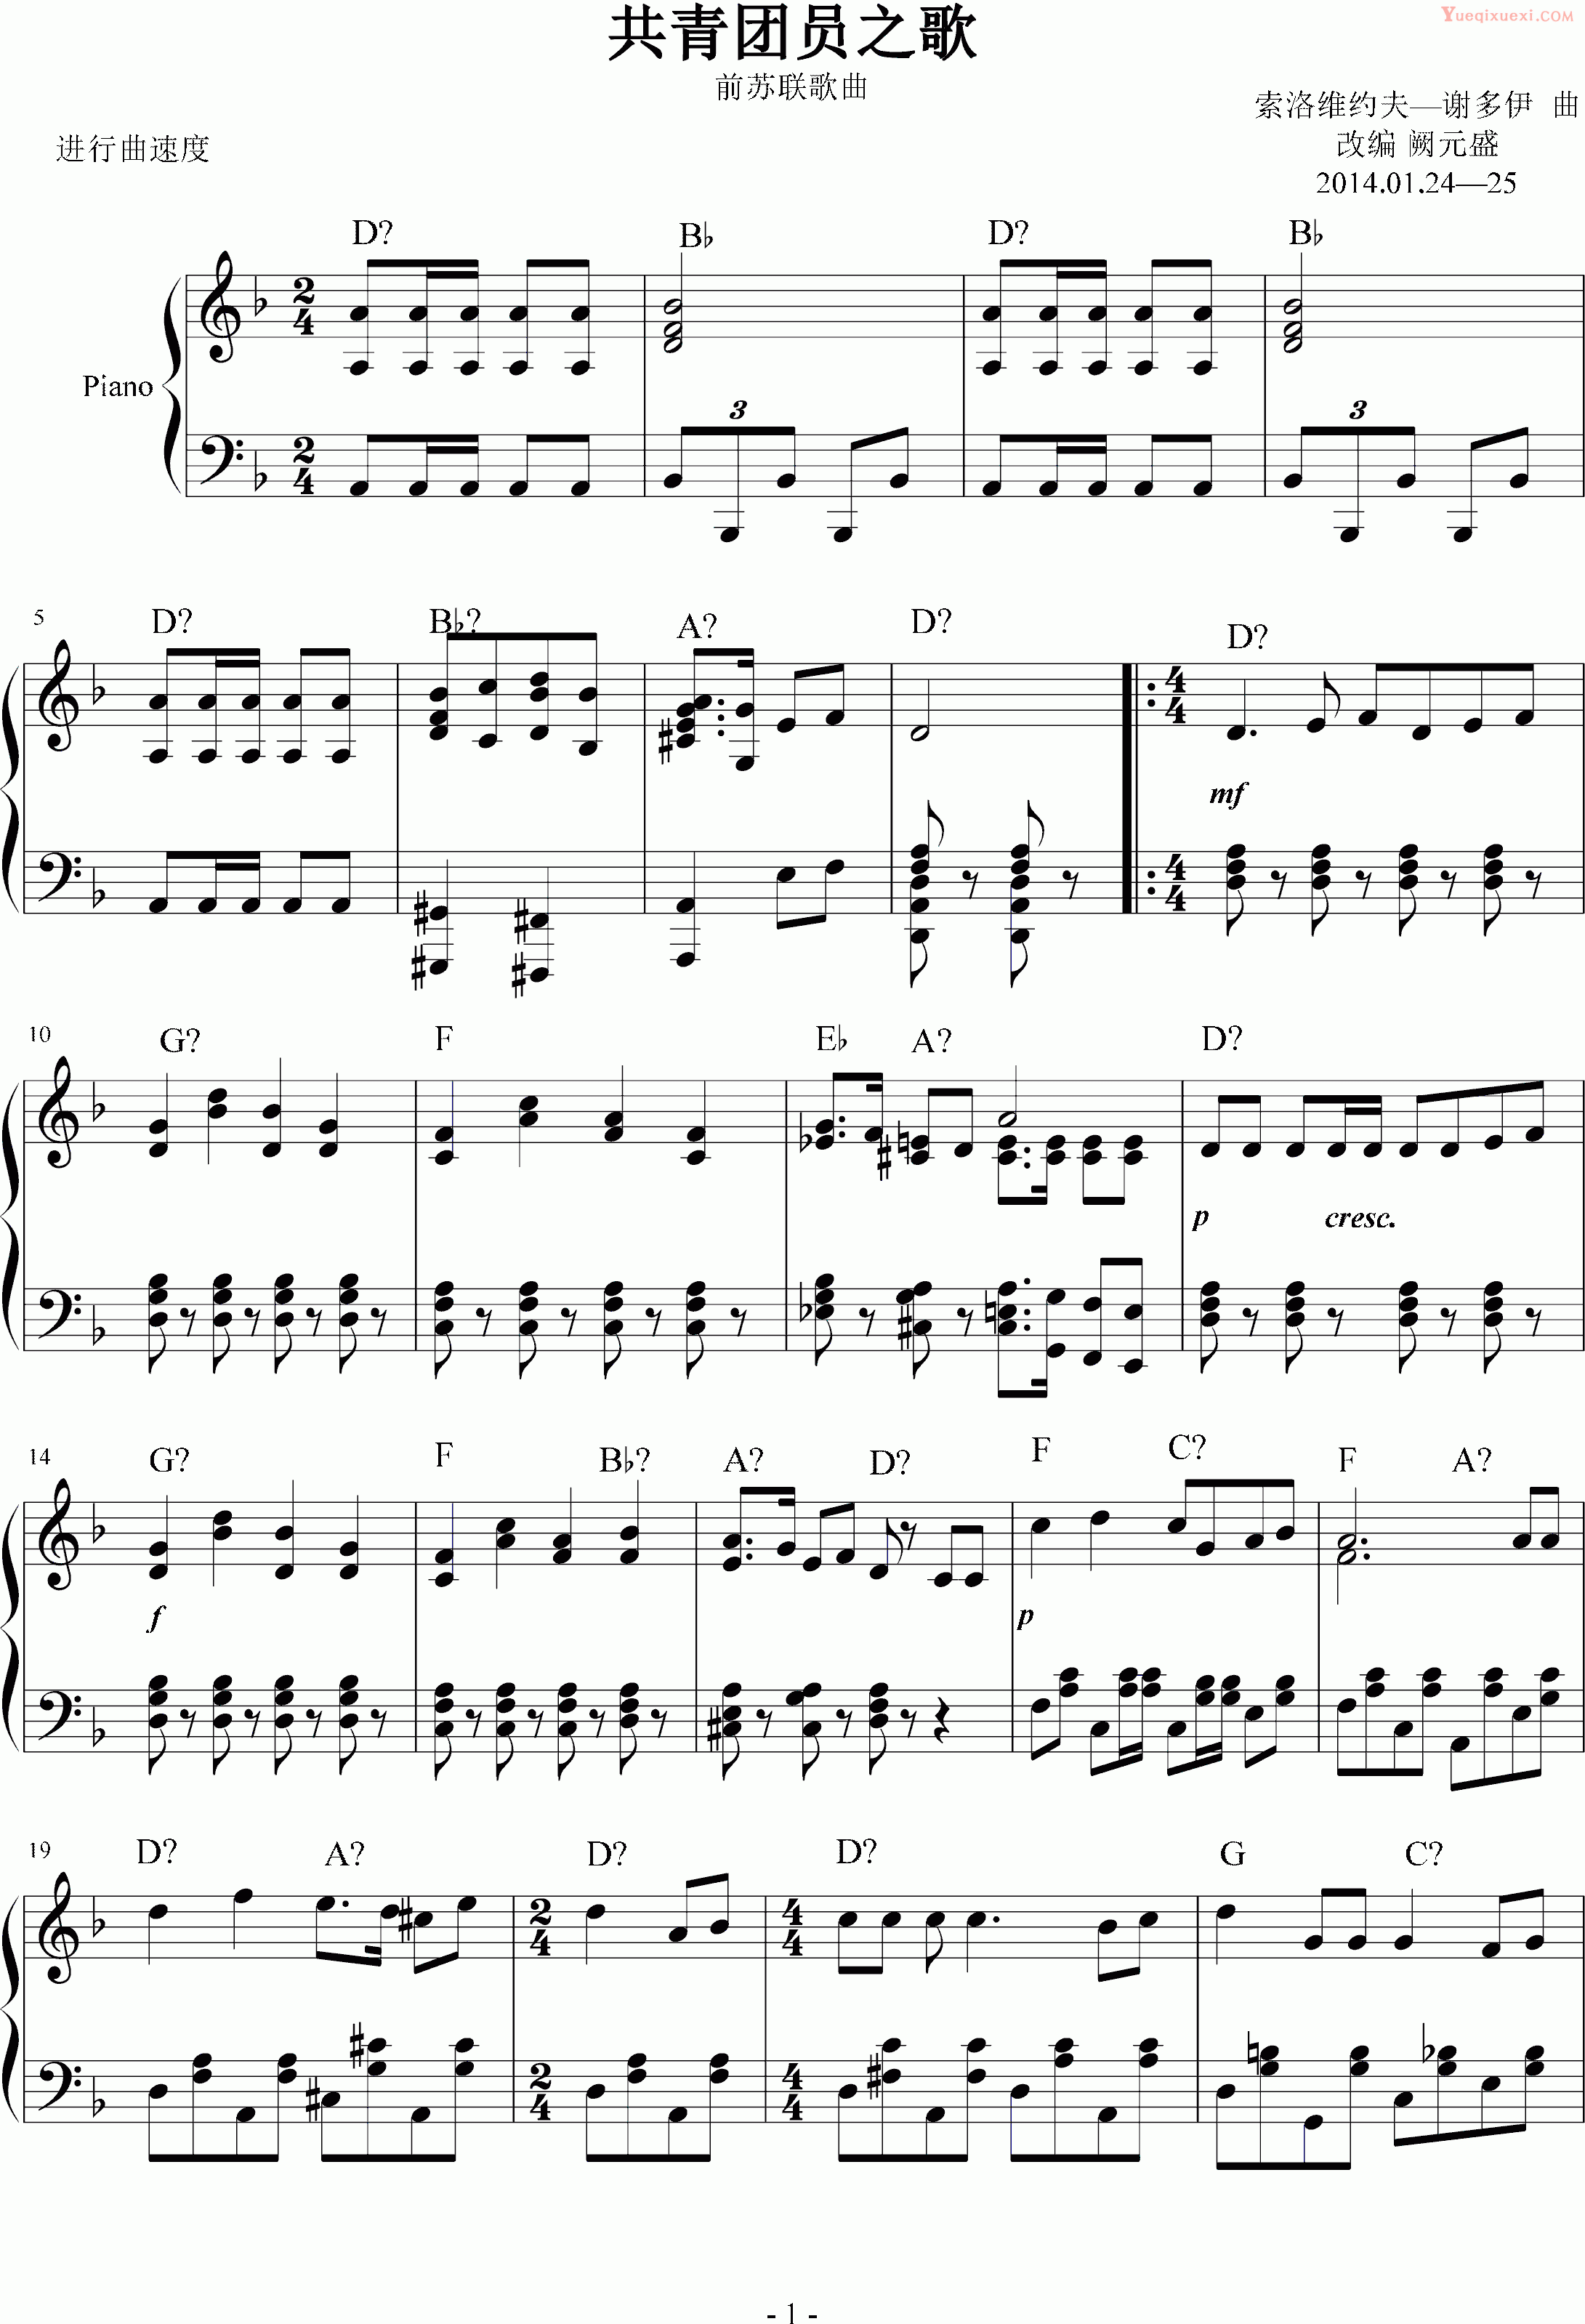 索洛维约夫 谢多伊 共青团员之歌（前苏联） 钢琴谱